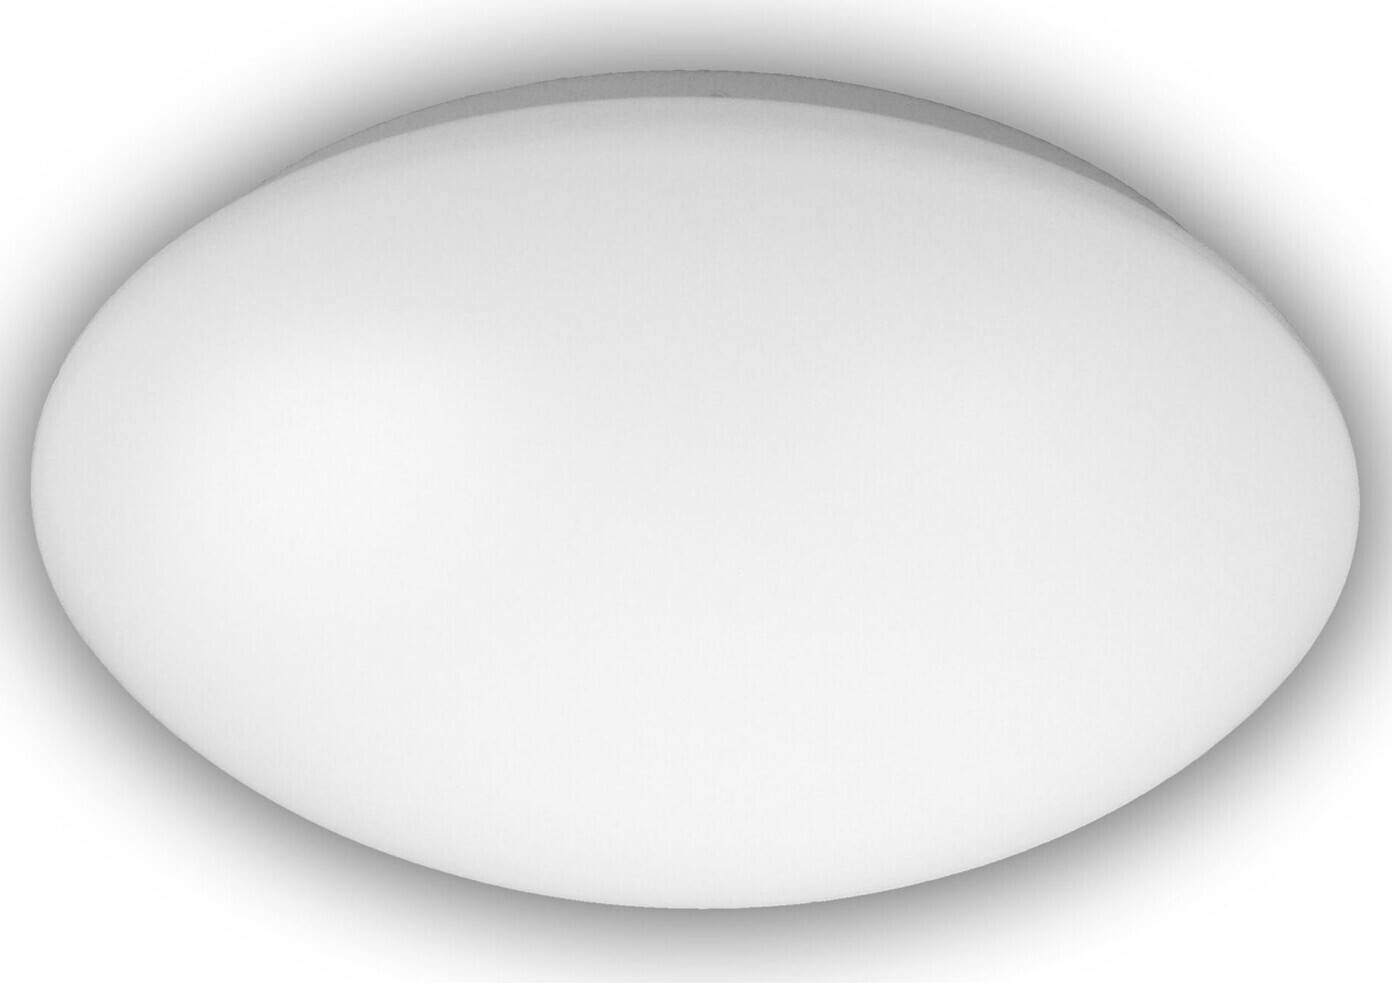 Niermann Deckenlampe Flurlampe Ø 36cm Kunststoff opalweiß Küchenlicht rund  Dielenleuchte ab 22,95 € | Preisvergleich bei